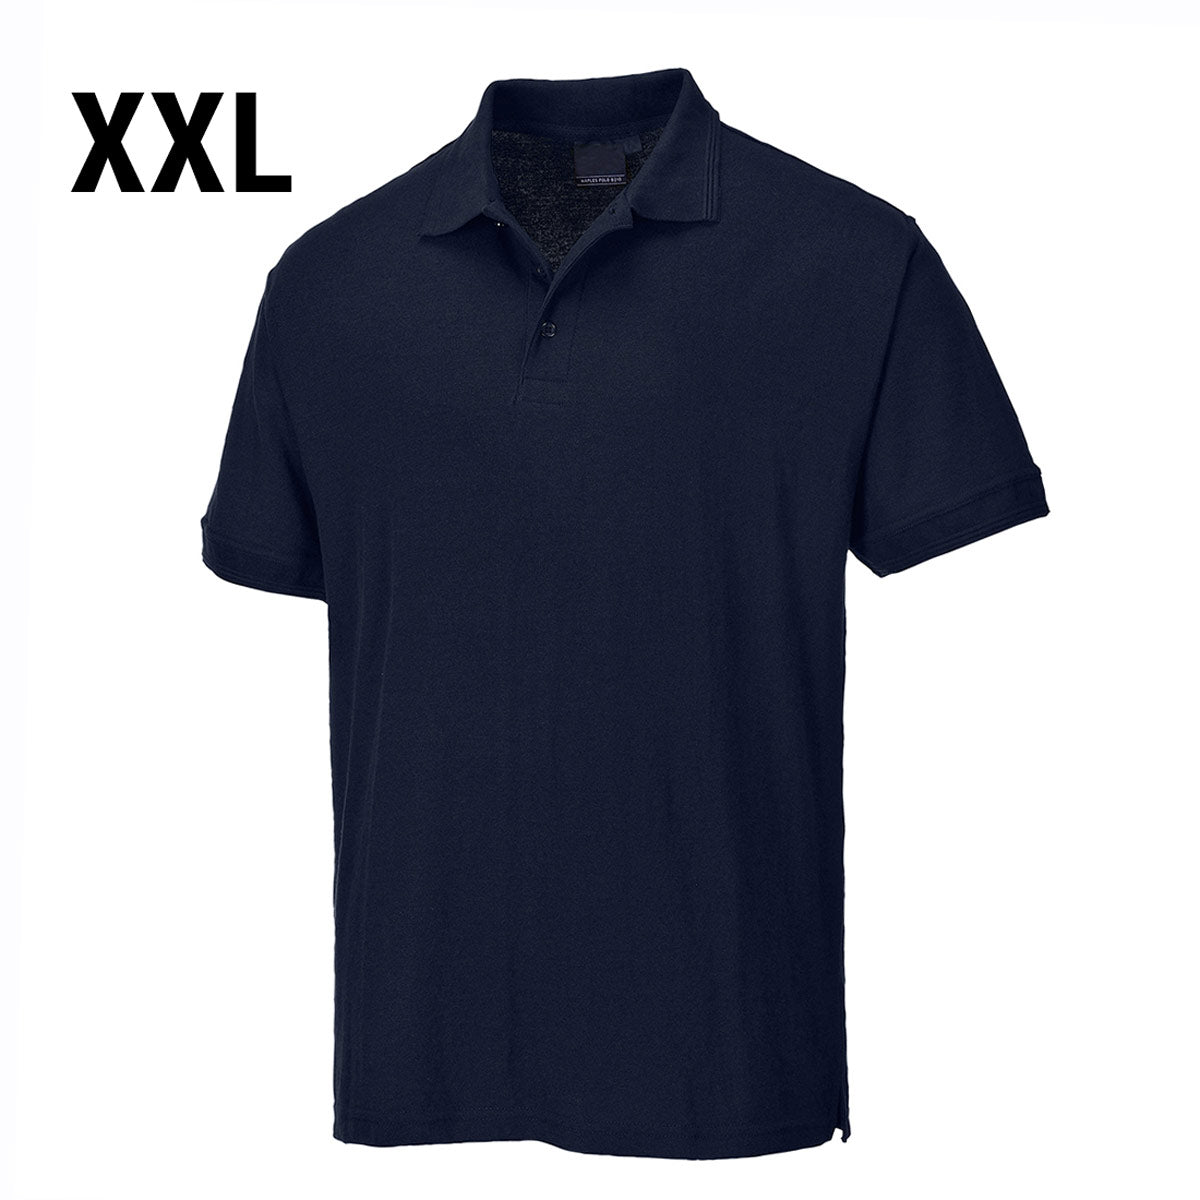 Poloskjorte til mænd - Dark Navy - Størrelse: XXL